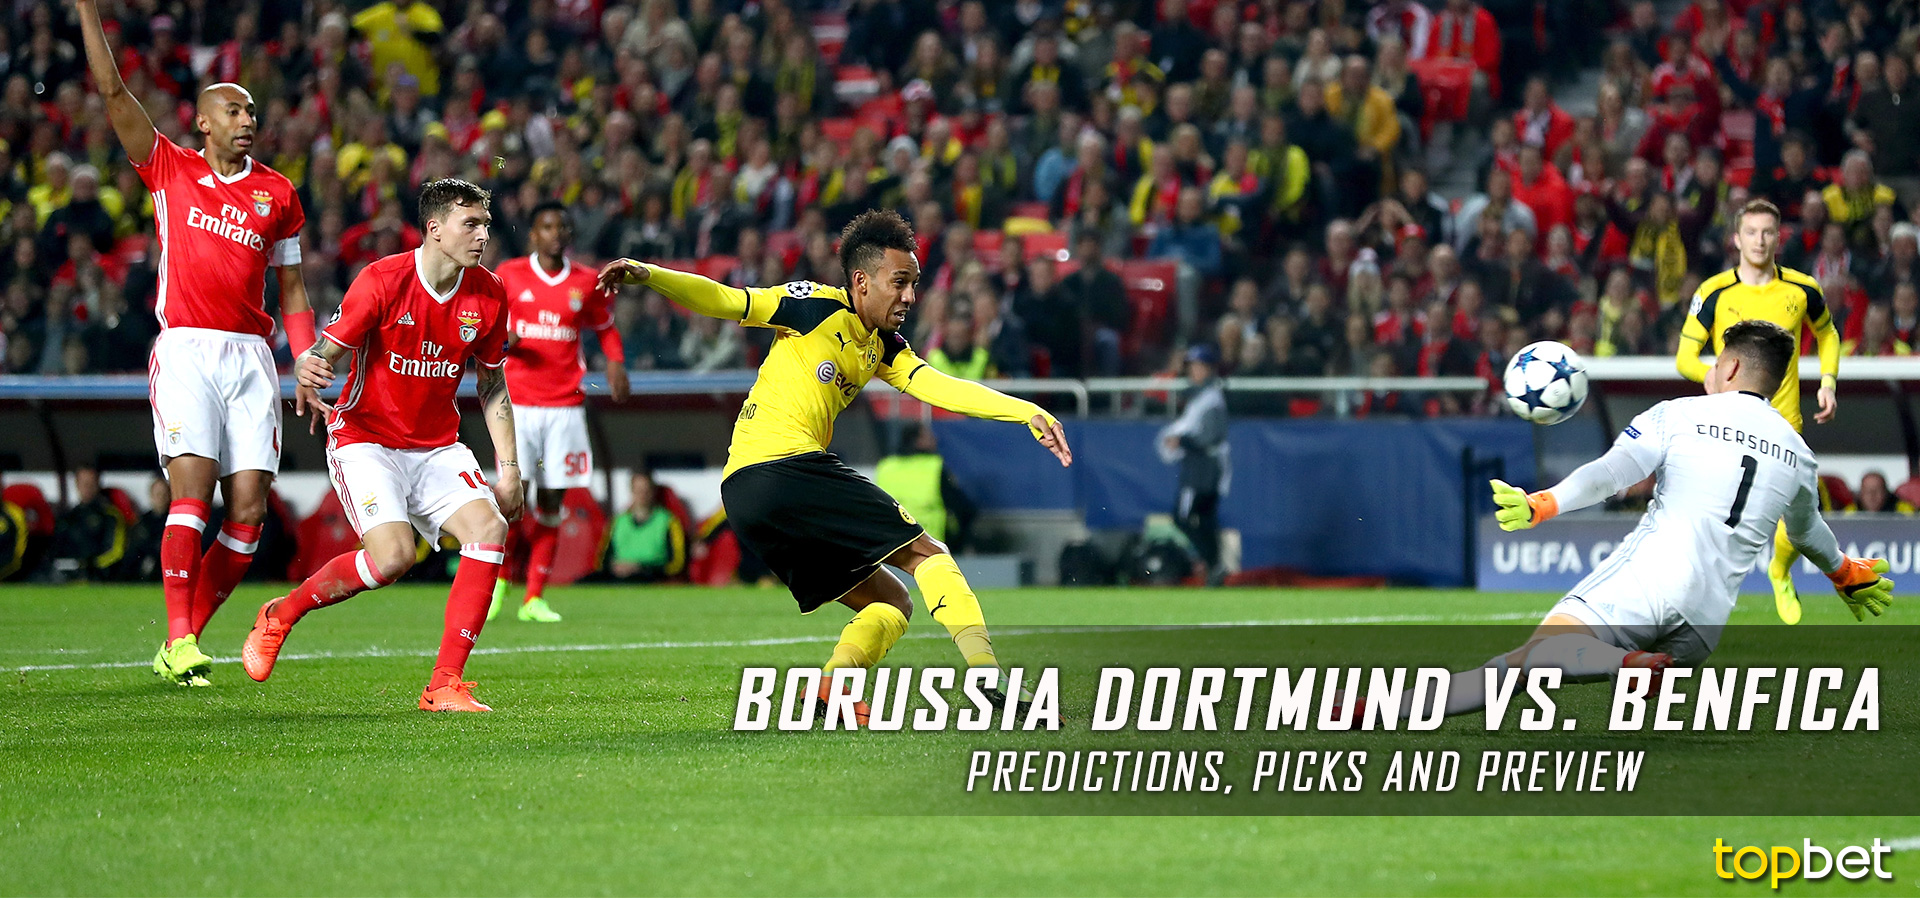 Benfica Vs Borussia Dortmund